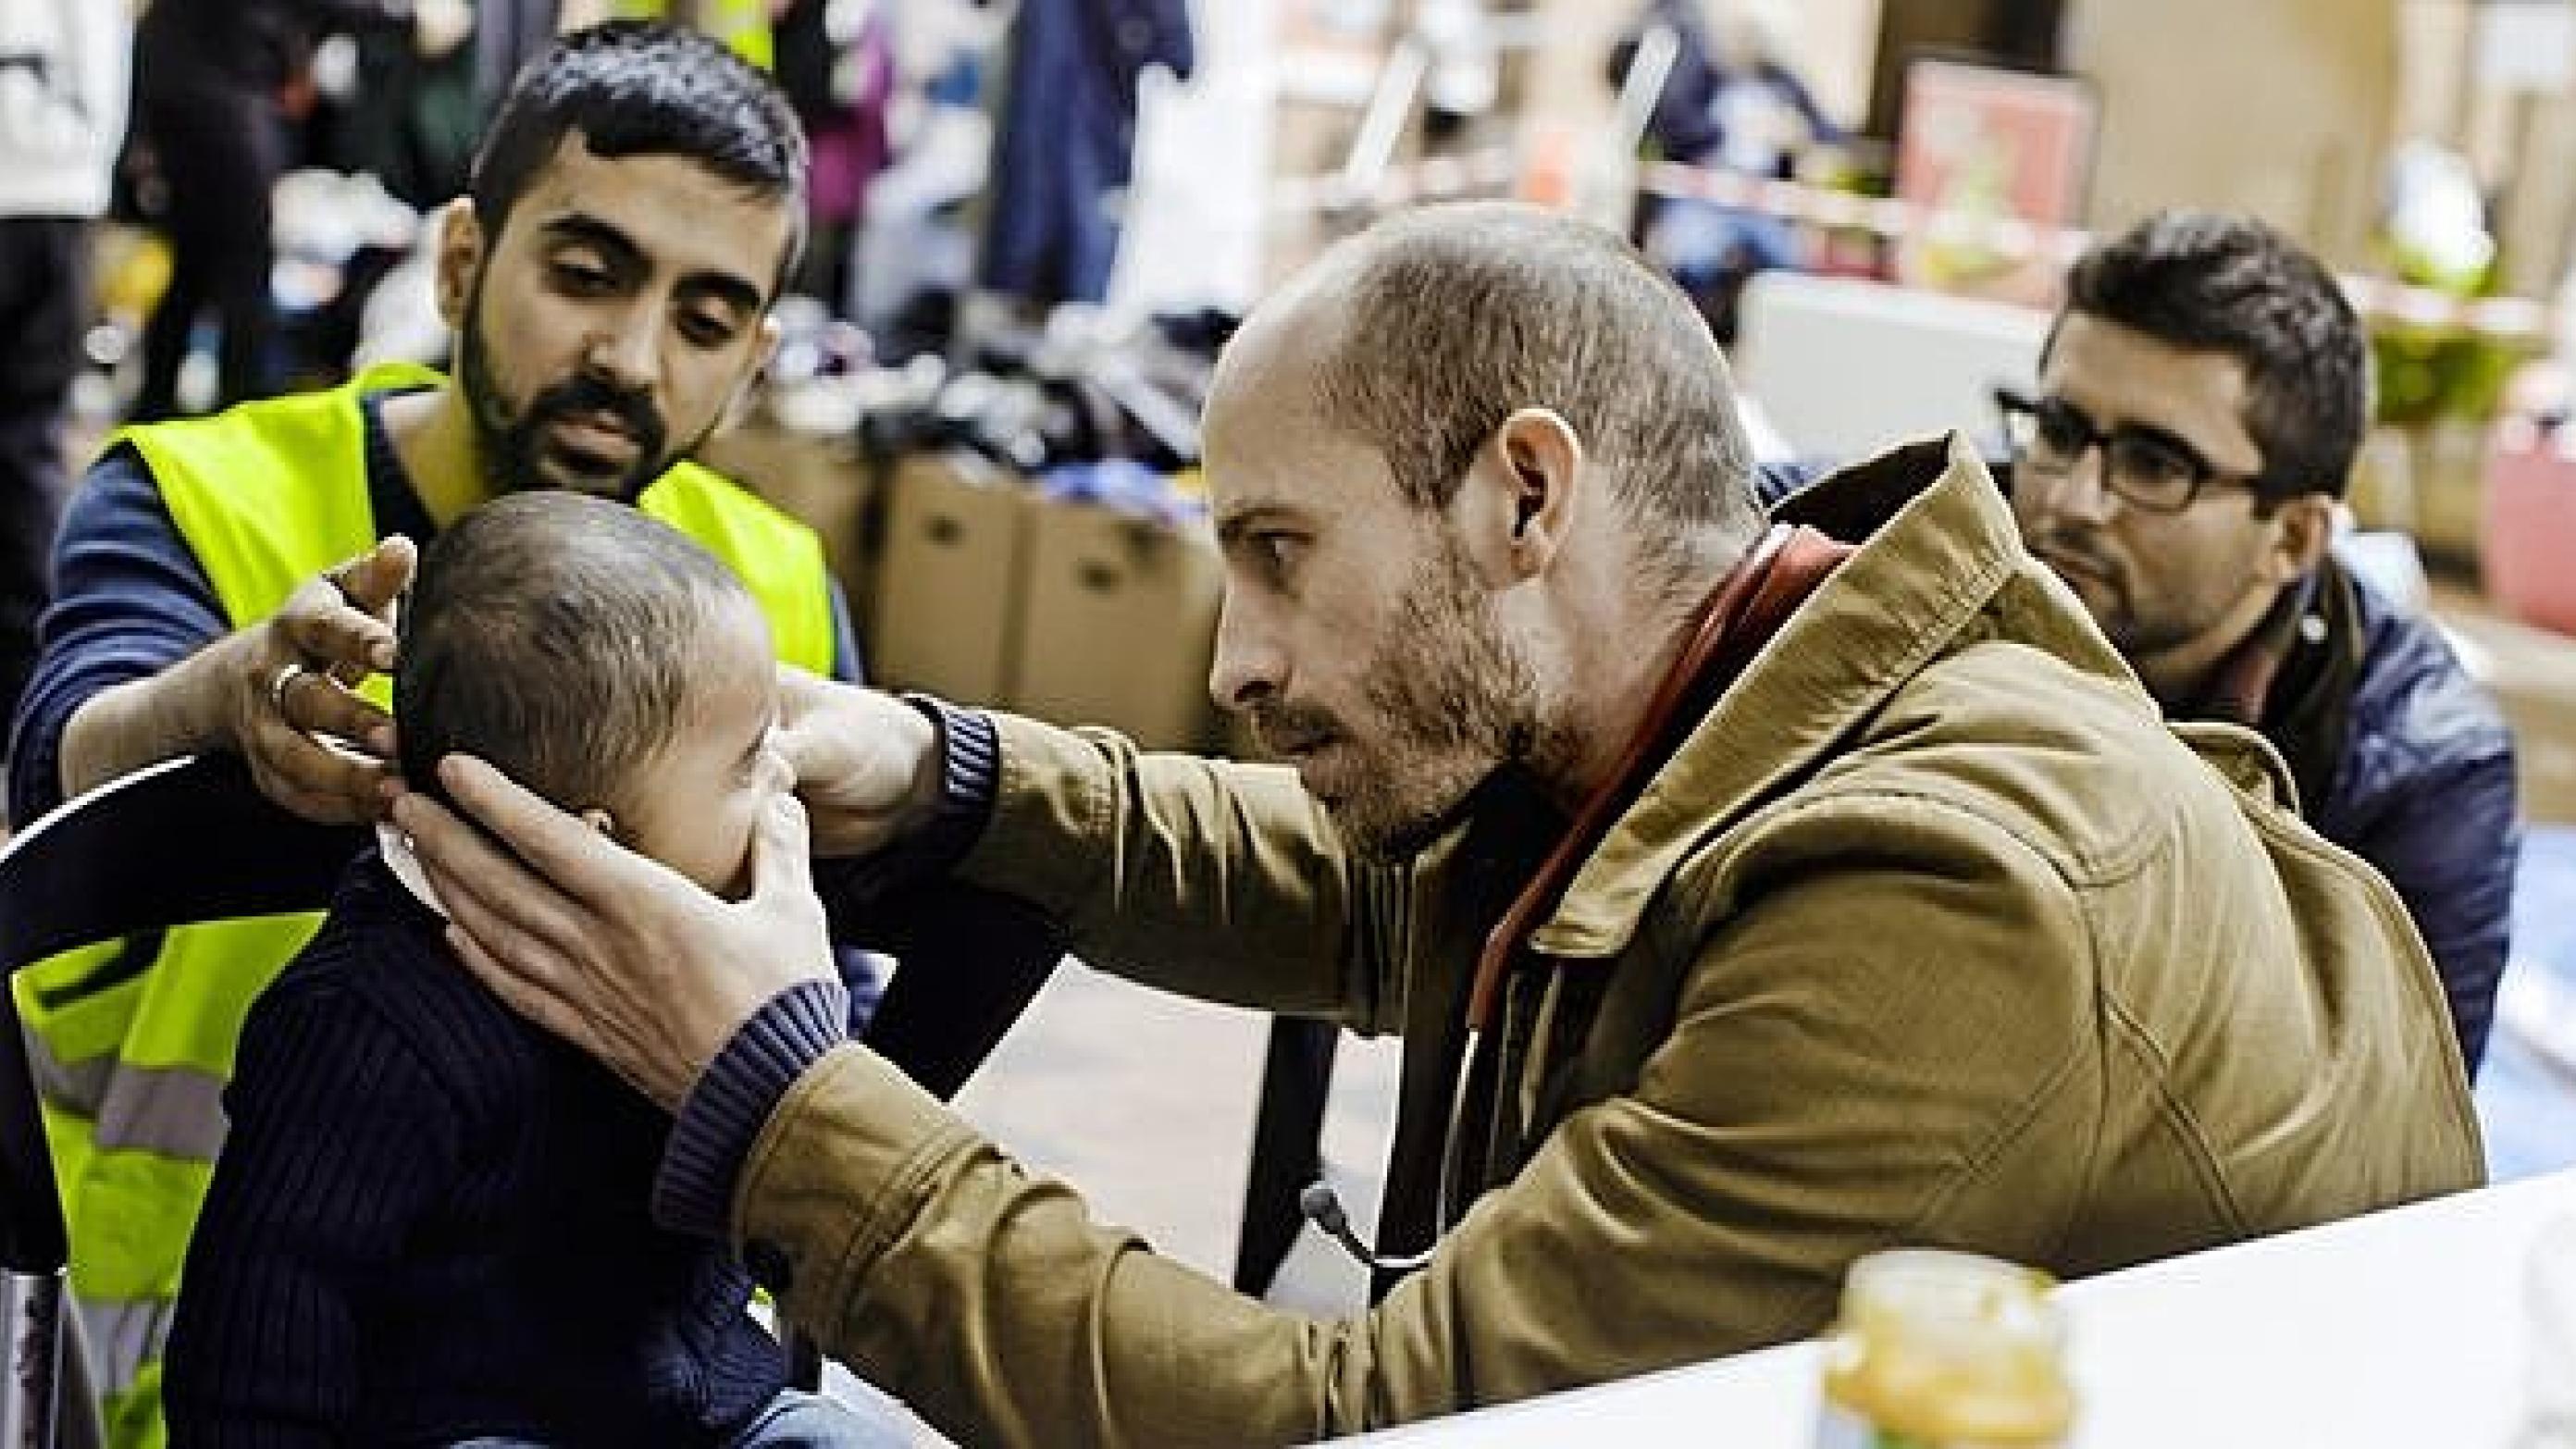 Læge Johan Stender undersøger et barn i det afspærrede område på Hovedbanegården. Her er både lægekonsultation og doneret mad og tøj til flygtningene. Foto: Claus Boesen